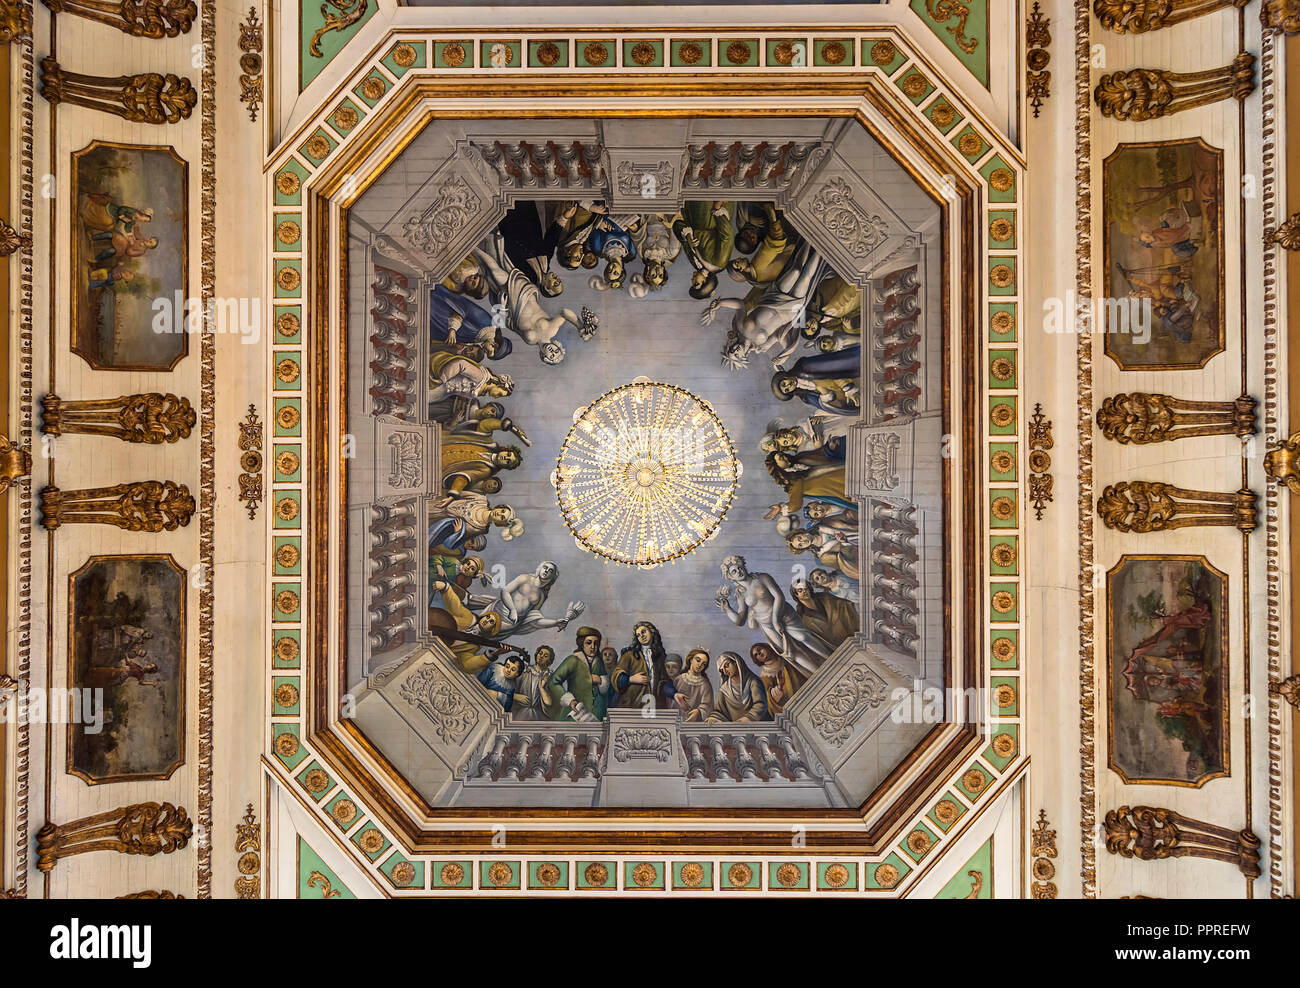 Queluz, Portugal - Diciembre 9, 2017: Detalle de la lámpara de araña en el techo interior de ricos decorados Palacio Real de Queluz. Utilizada antiguamente como el verano residen Foto de stock